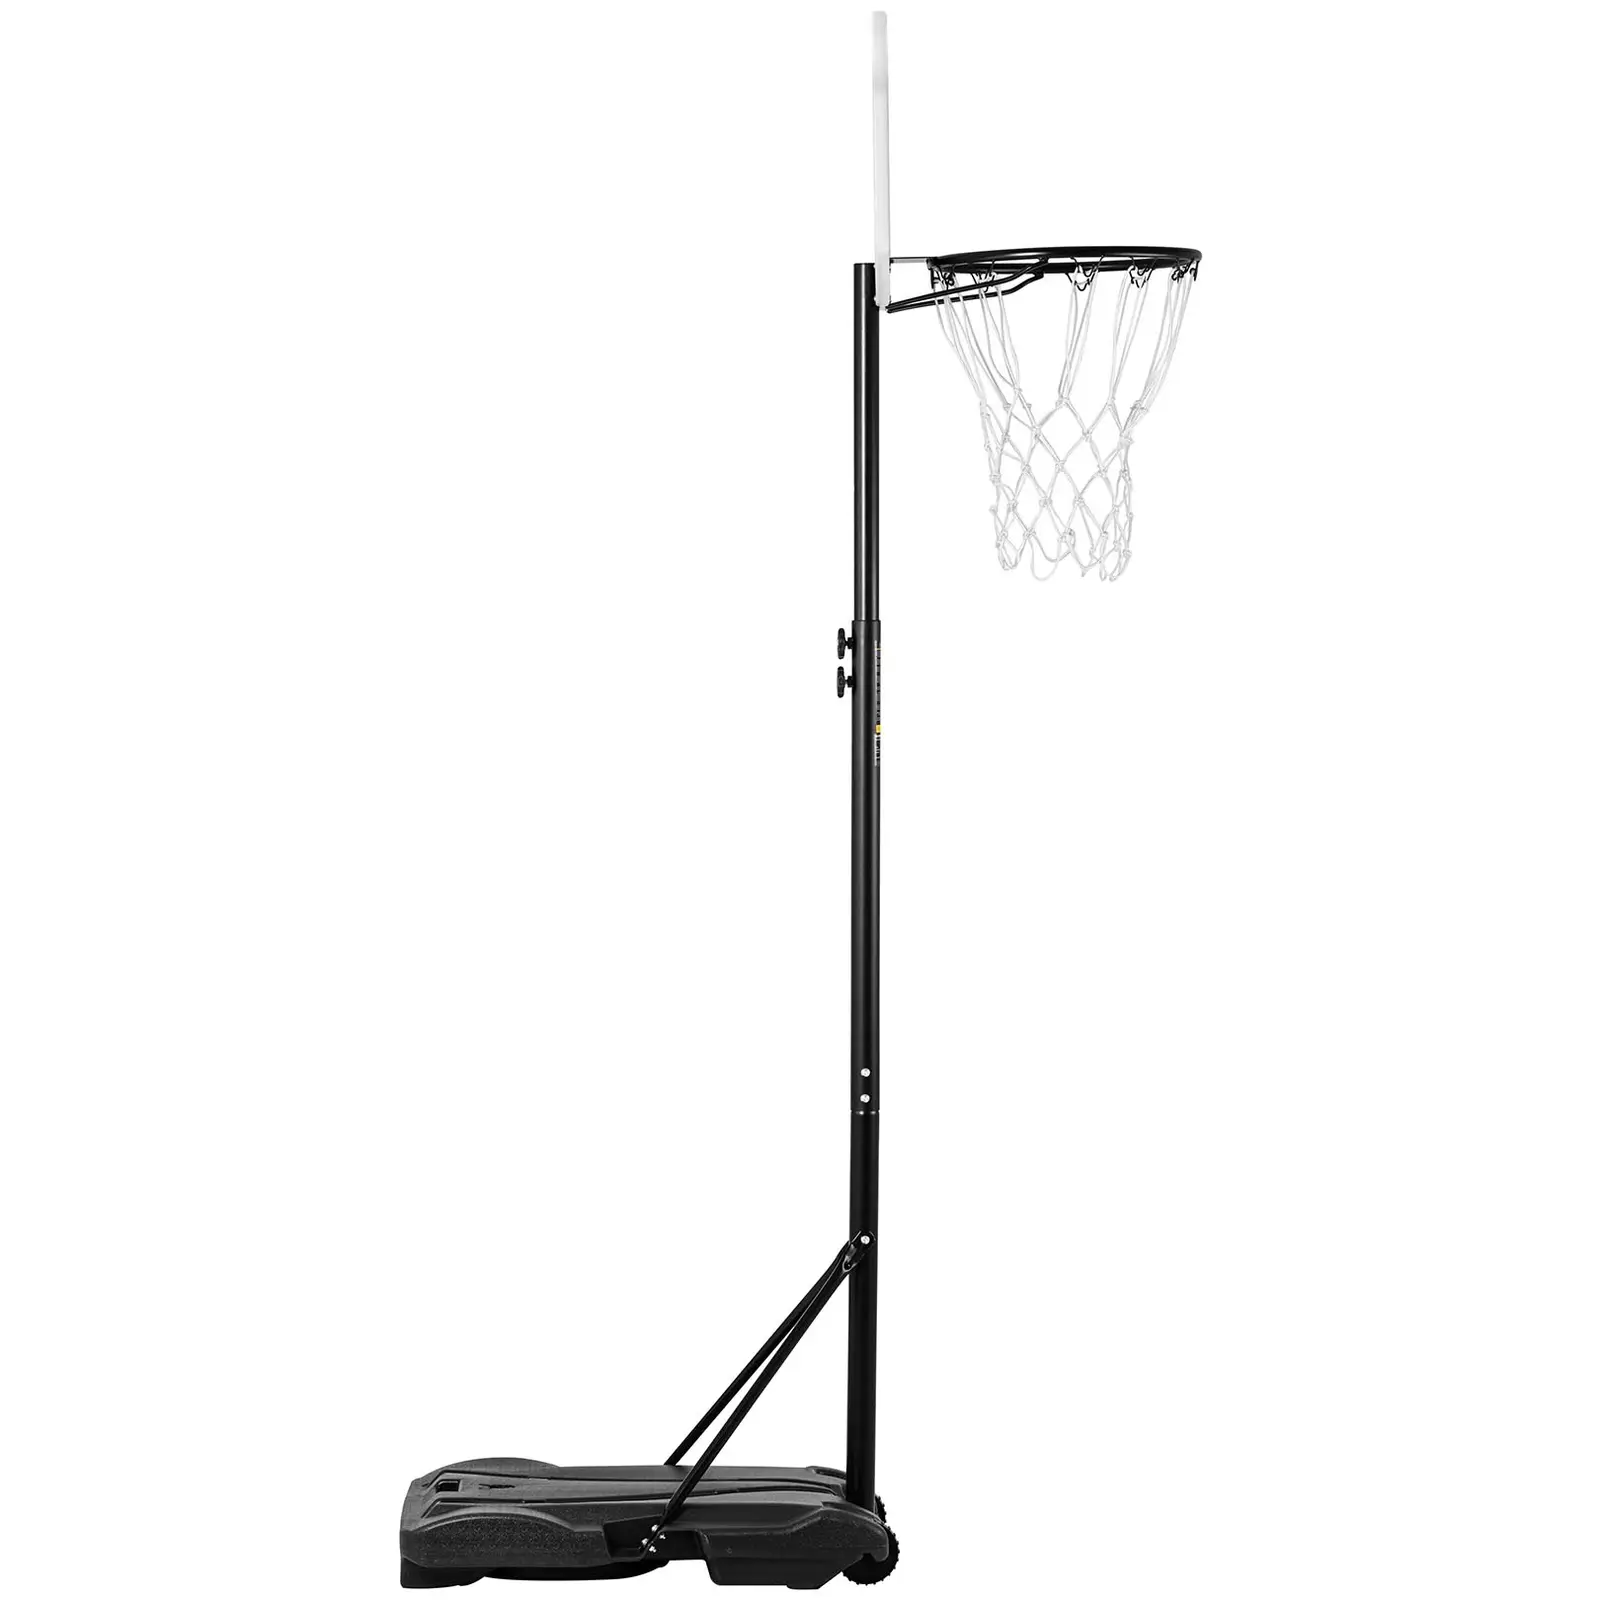 Canestro basket regolabile in altezza per bambini - Base mobile con ruote -  Da 178 a 205 cm